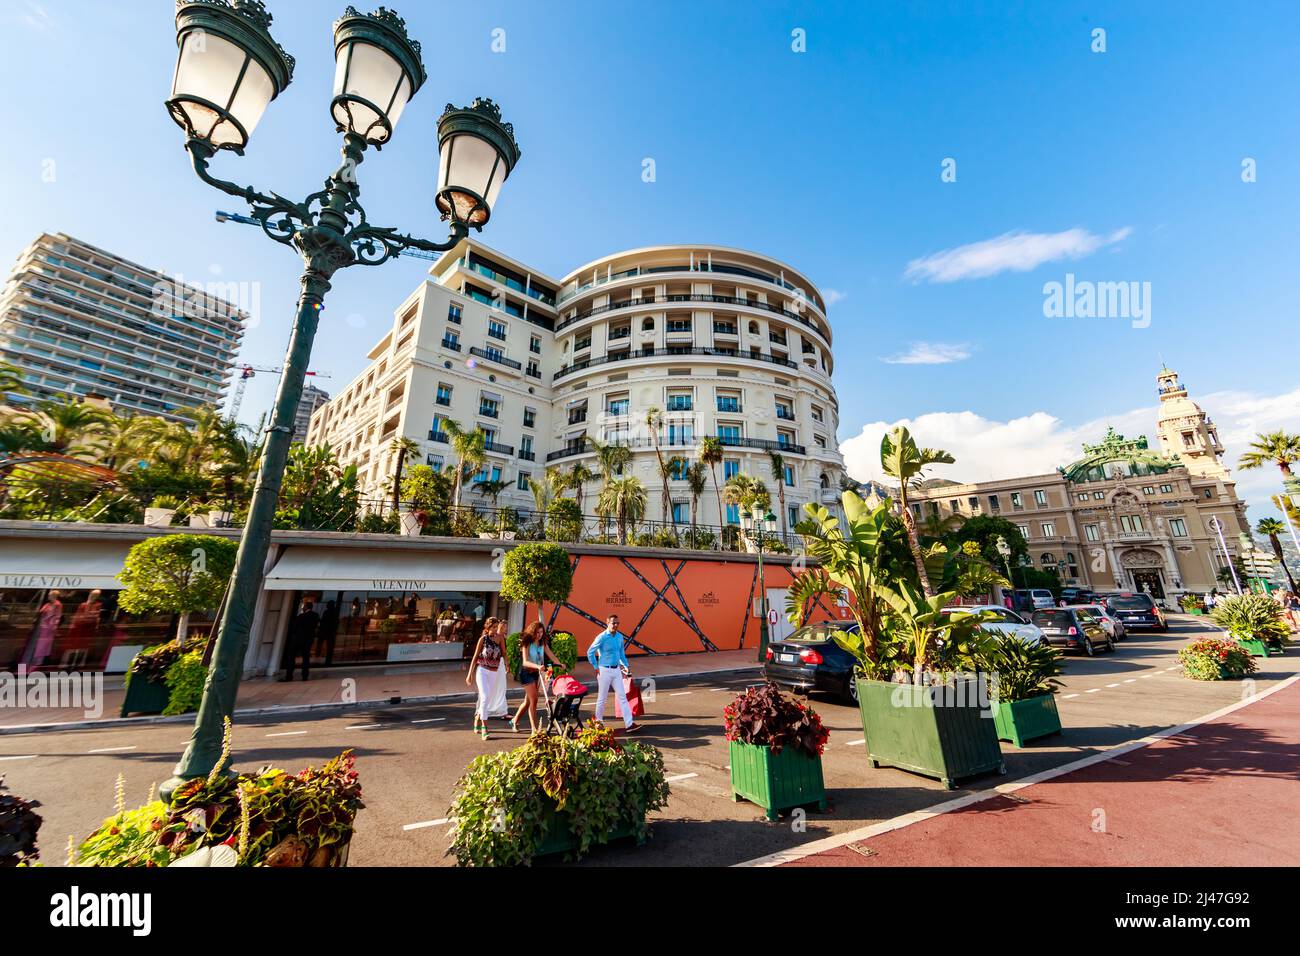 Monaco, Monte-Carlo, 21 août 2017 : touristes et riches personnes visitent des boutiques de marque près de l'hôtel Paris et du Casino Monte-Carlo au coucher du soleil, luxe Banque D'Images